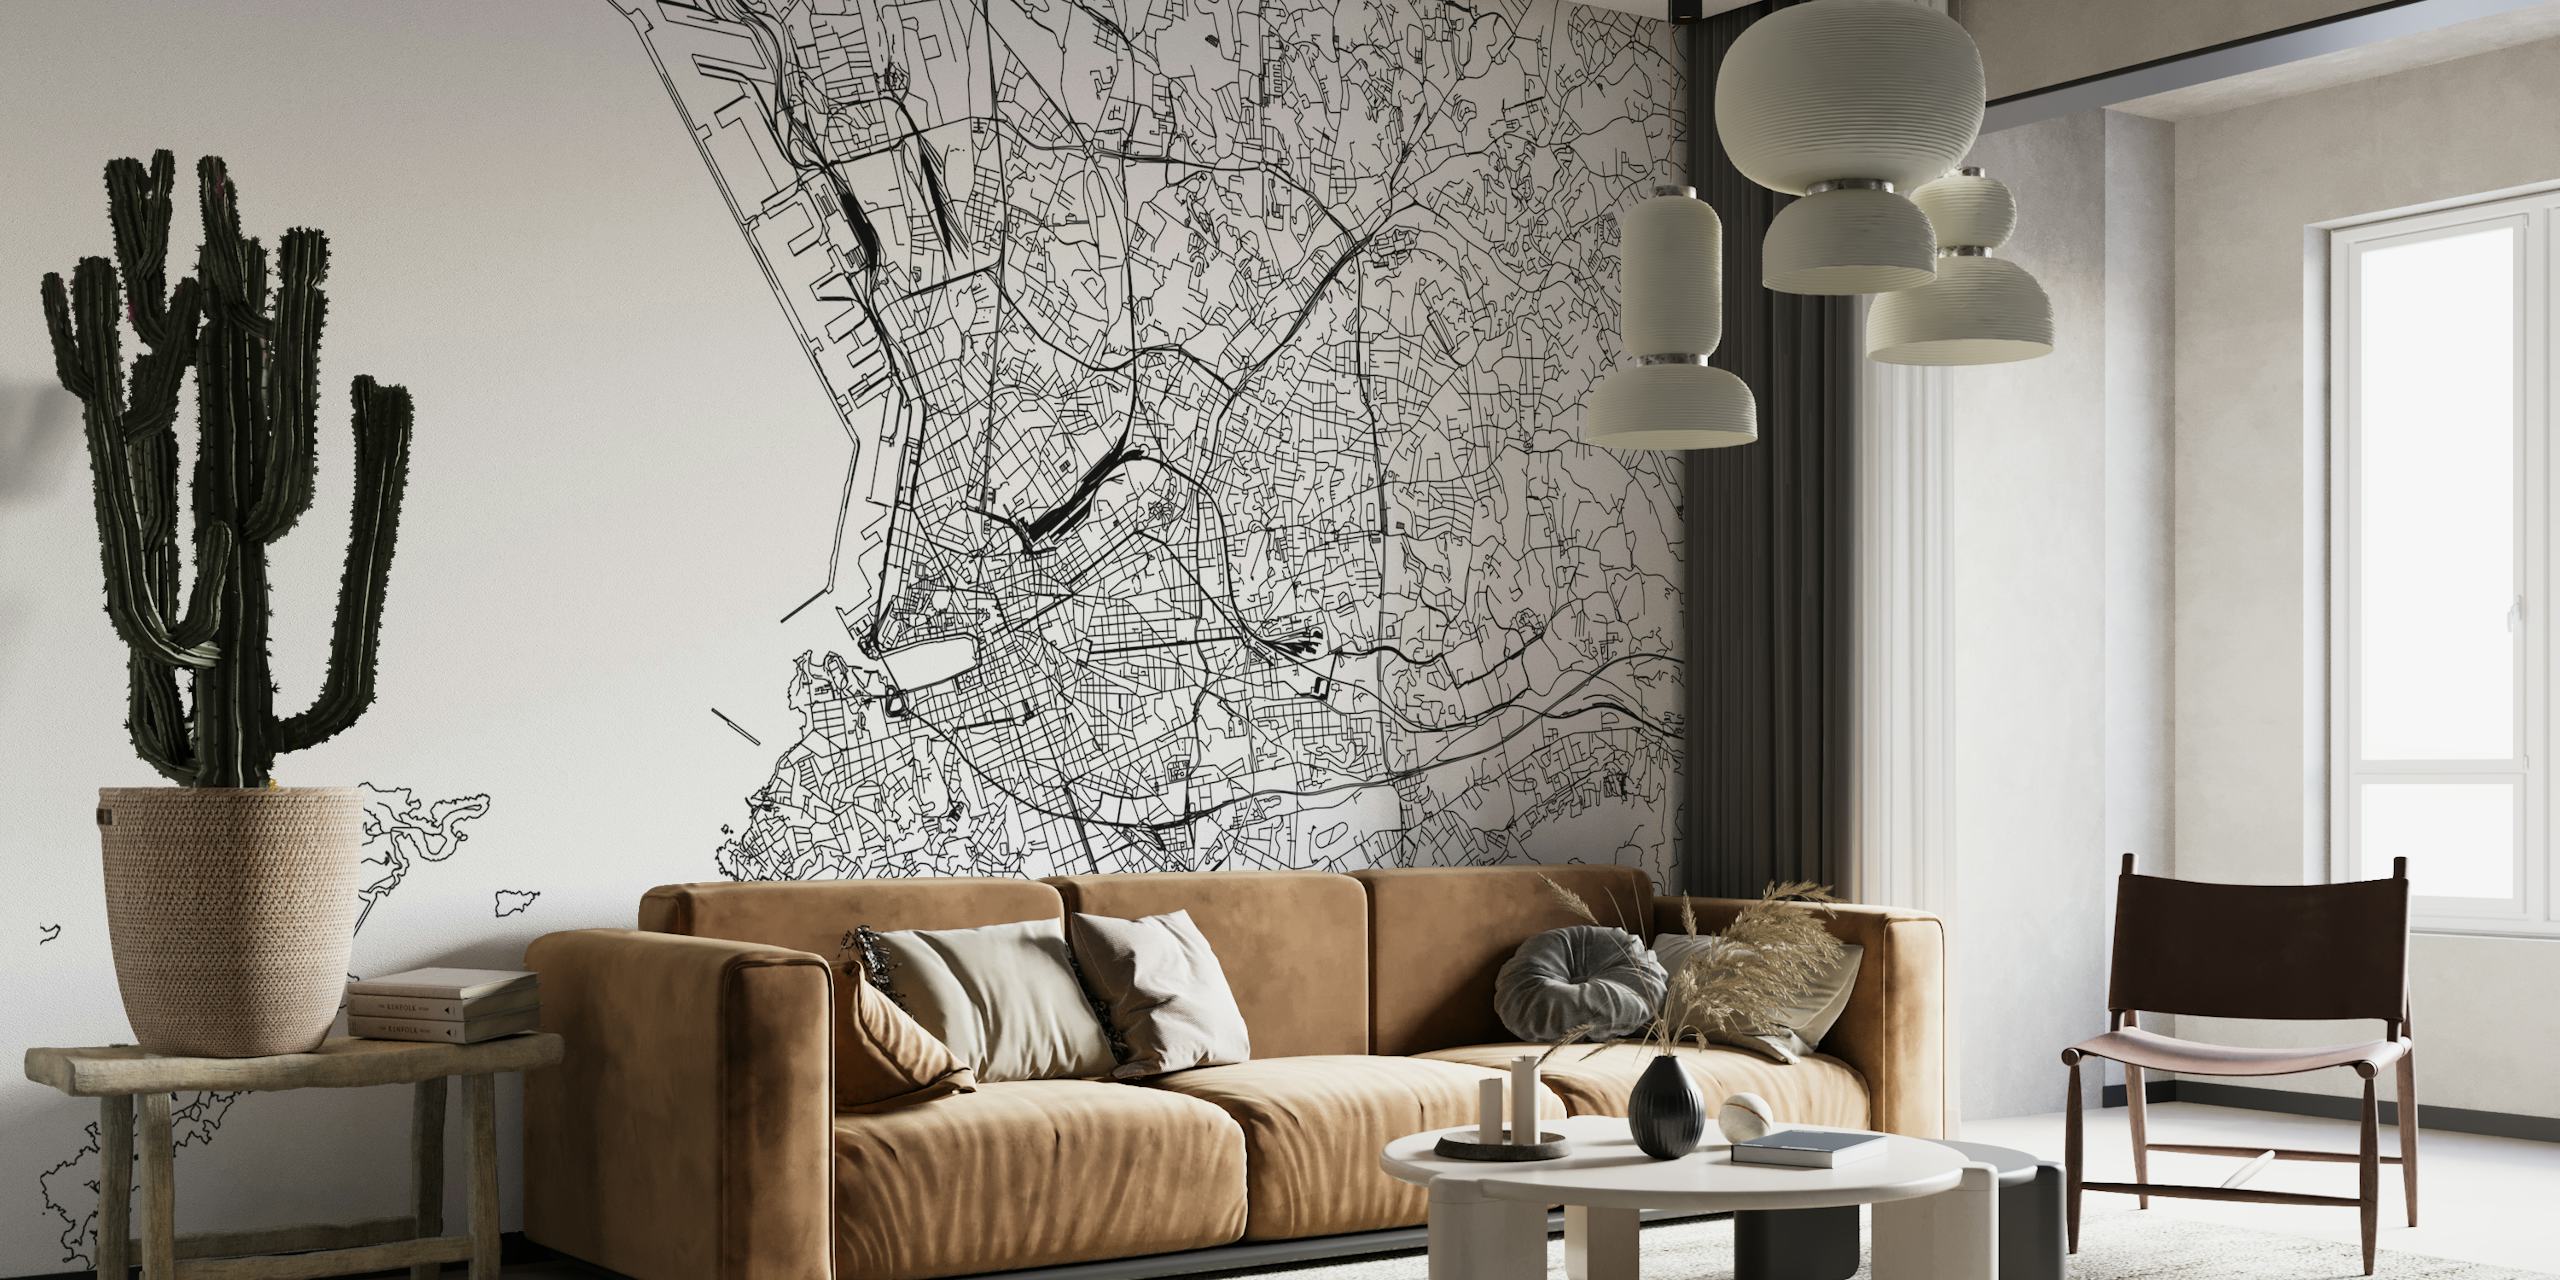 Zwart-wit gedetailleerde kaart van Marseille muurschildering voor interieurdecoratie.